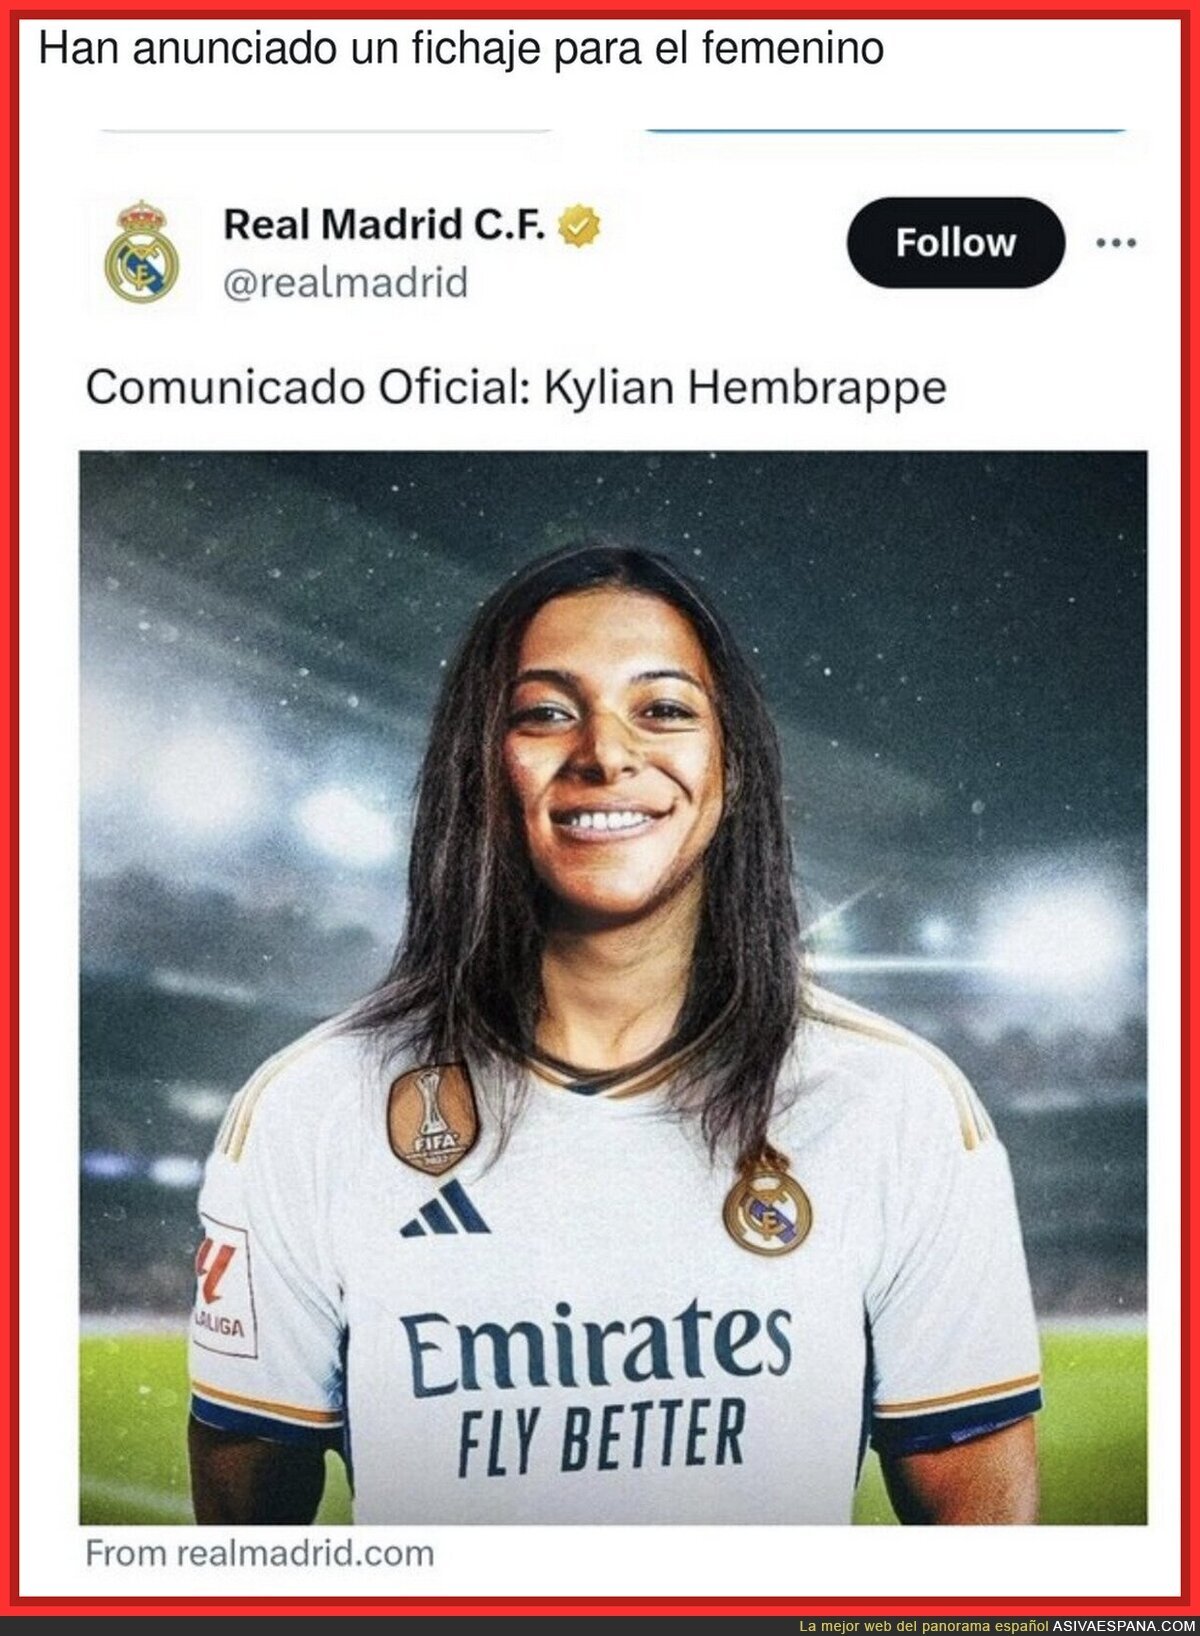 El nuevo fichaje del Real Madrid femenino